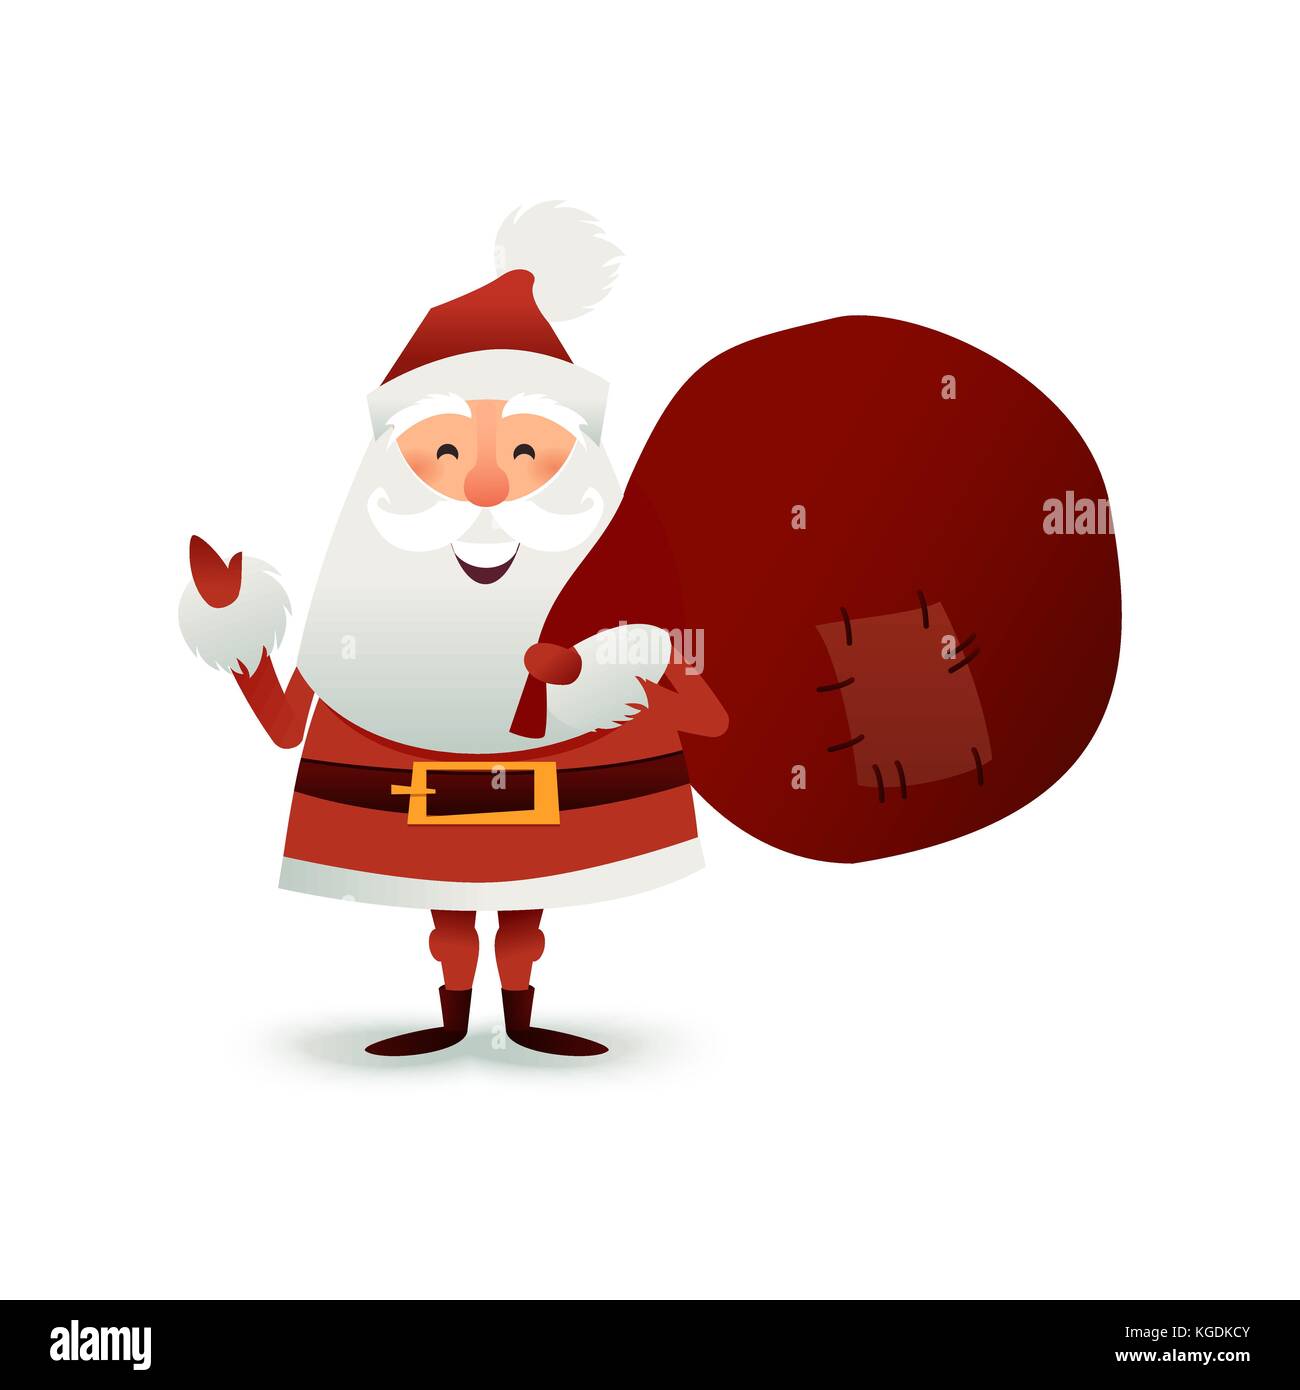 Weihnachtsmann mit Sack voller Geschenk- und Geschenkschachteln. Frohe Weihnachten Vater Cartoon-Figur. Niedlicher Weihnachtsmann für das Weihnachtsdesign. Grußkarte für das neue Jahr zur Einladung, herzlichen Glückwunsch. Flache Vektorgrafik. Stock Vektor